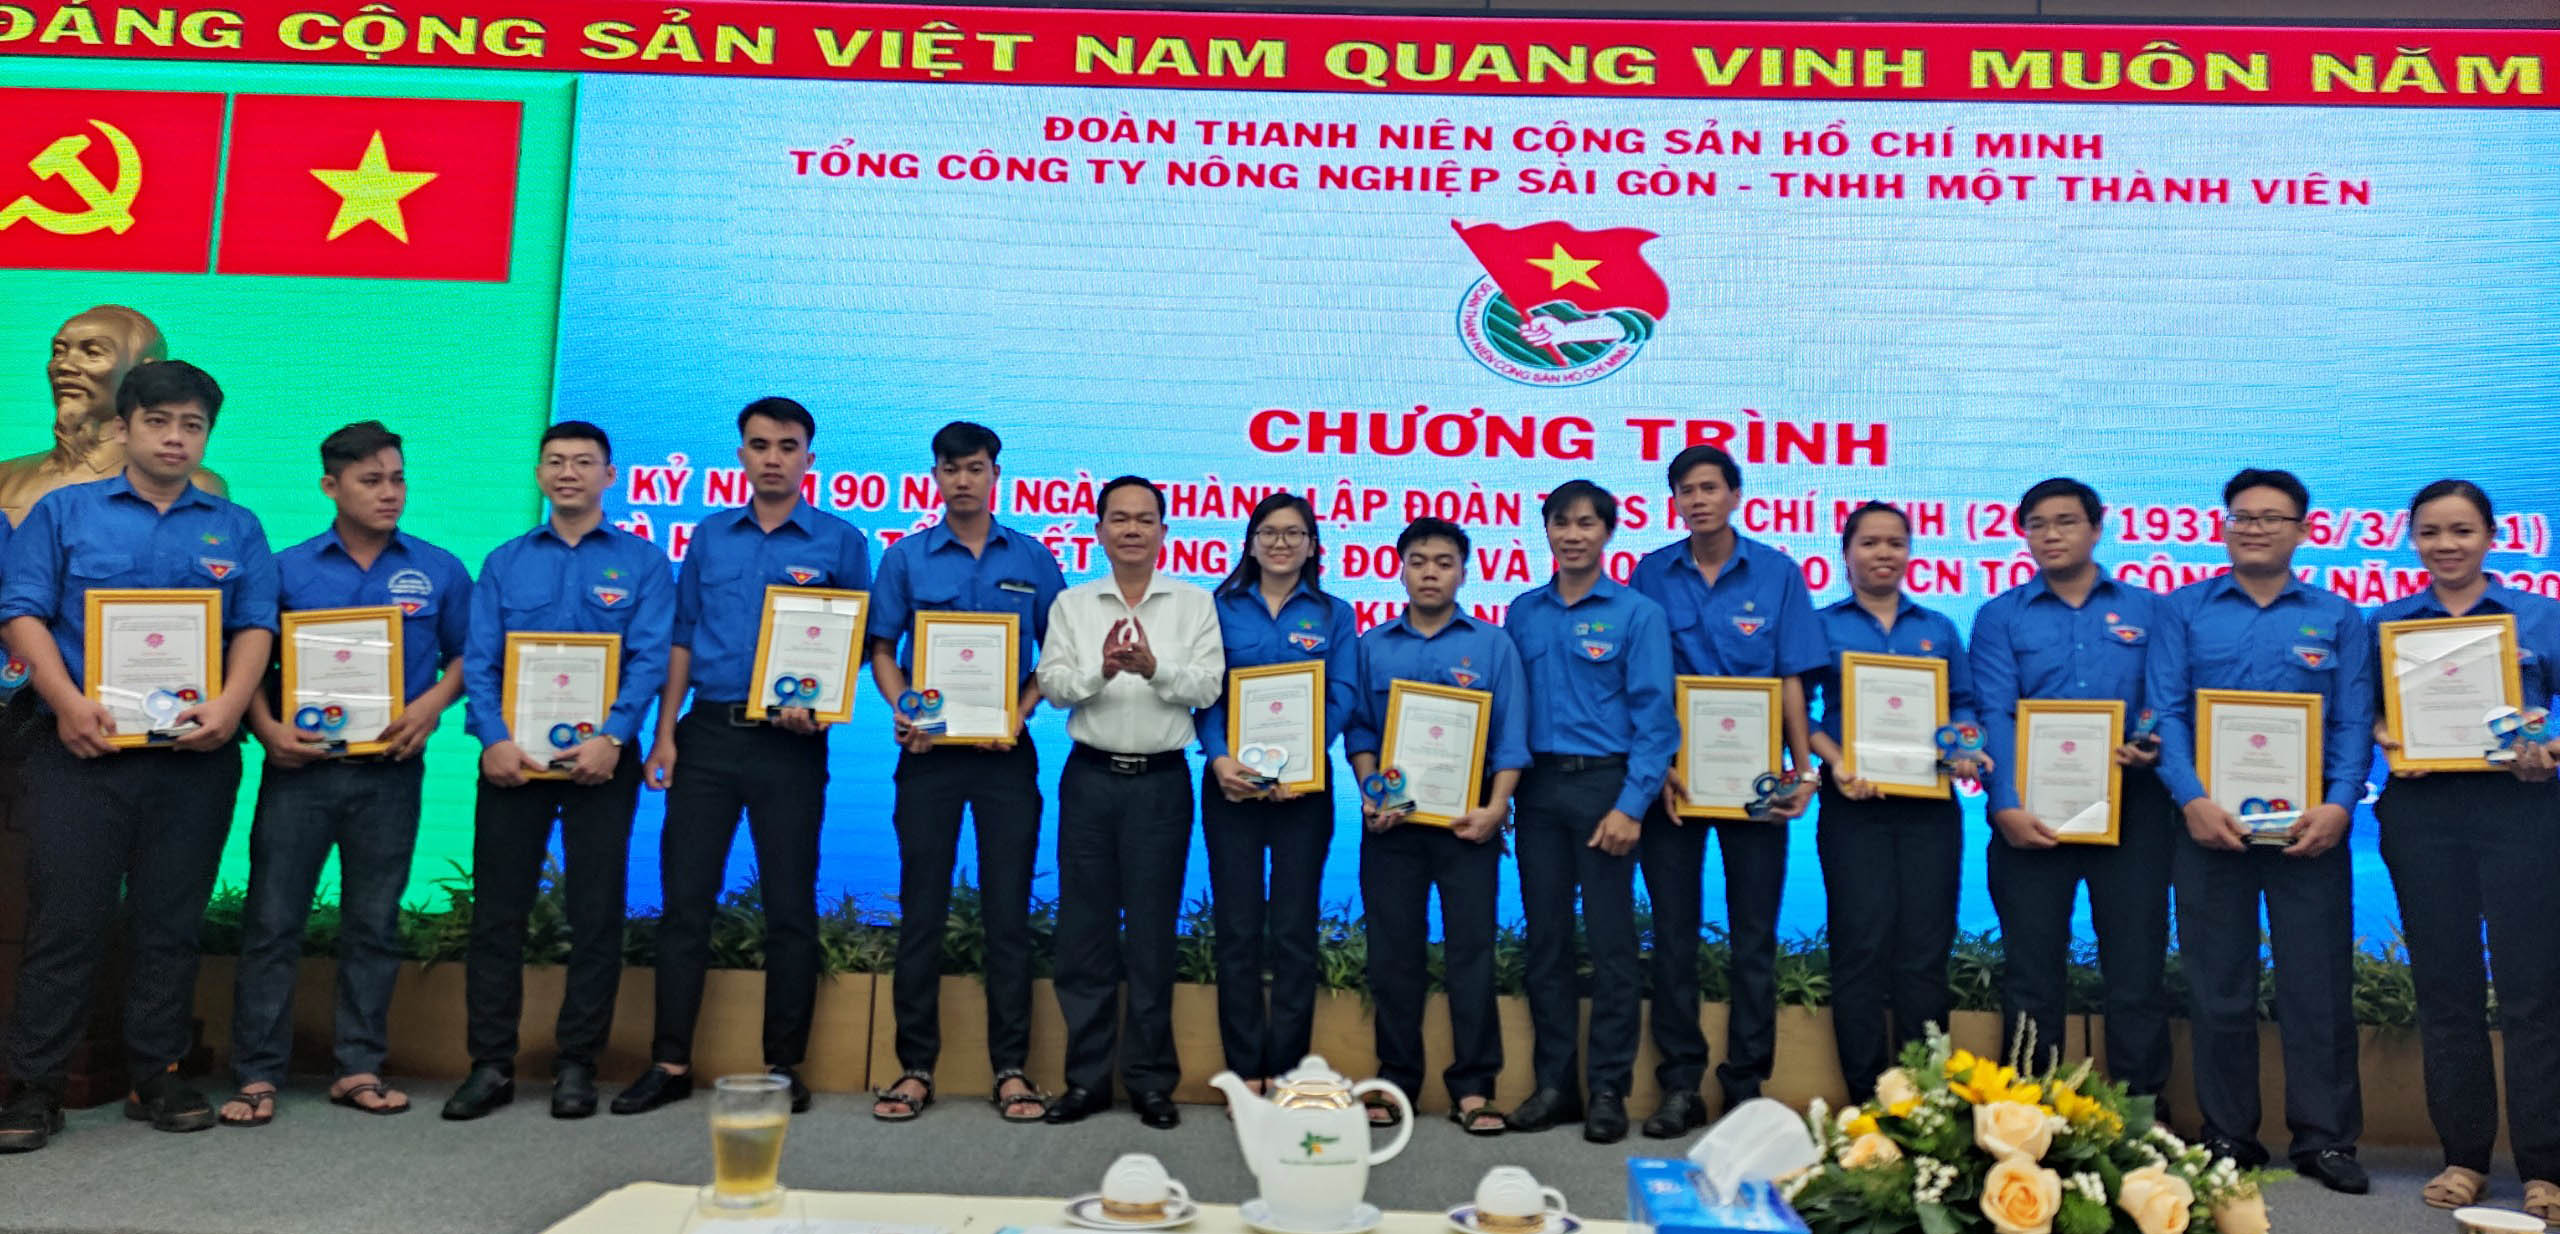 Chương trình kỷ niệm 90 năm ngày thành lập Đoàn TNCS Hồ Chí Minh và Hội nghị công tác Đoàn và phong trào TNCN Tổng Công ty năm 2020, triển khai nhiệm vụ năm 2021